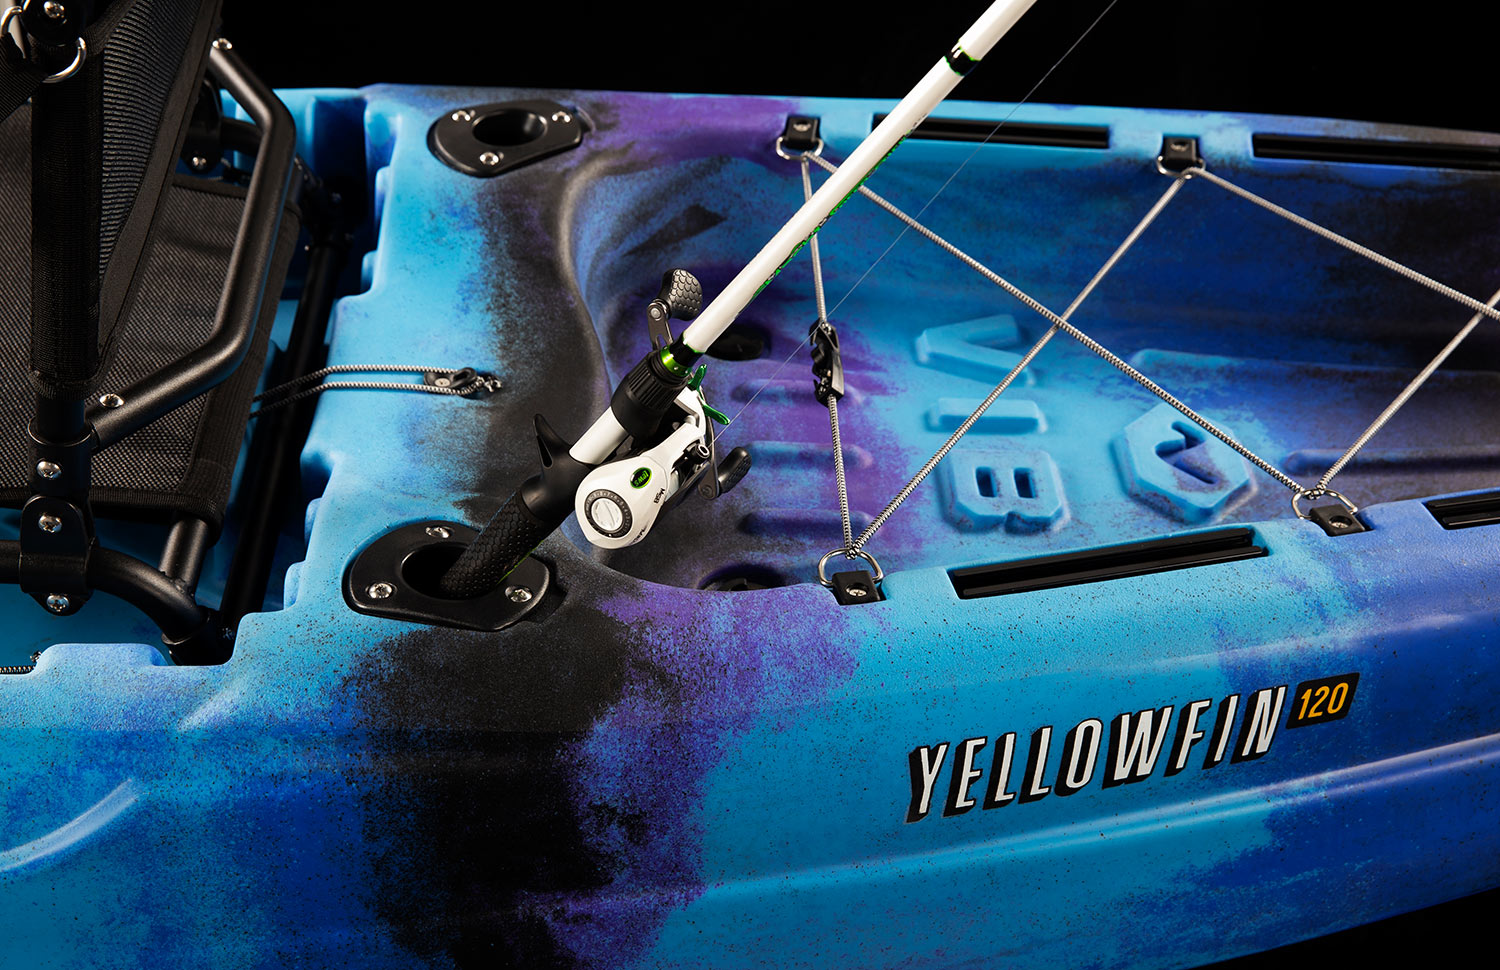 Compartiment de stockage arrière Yellowfin 120 avec fixation par élastique